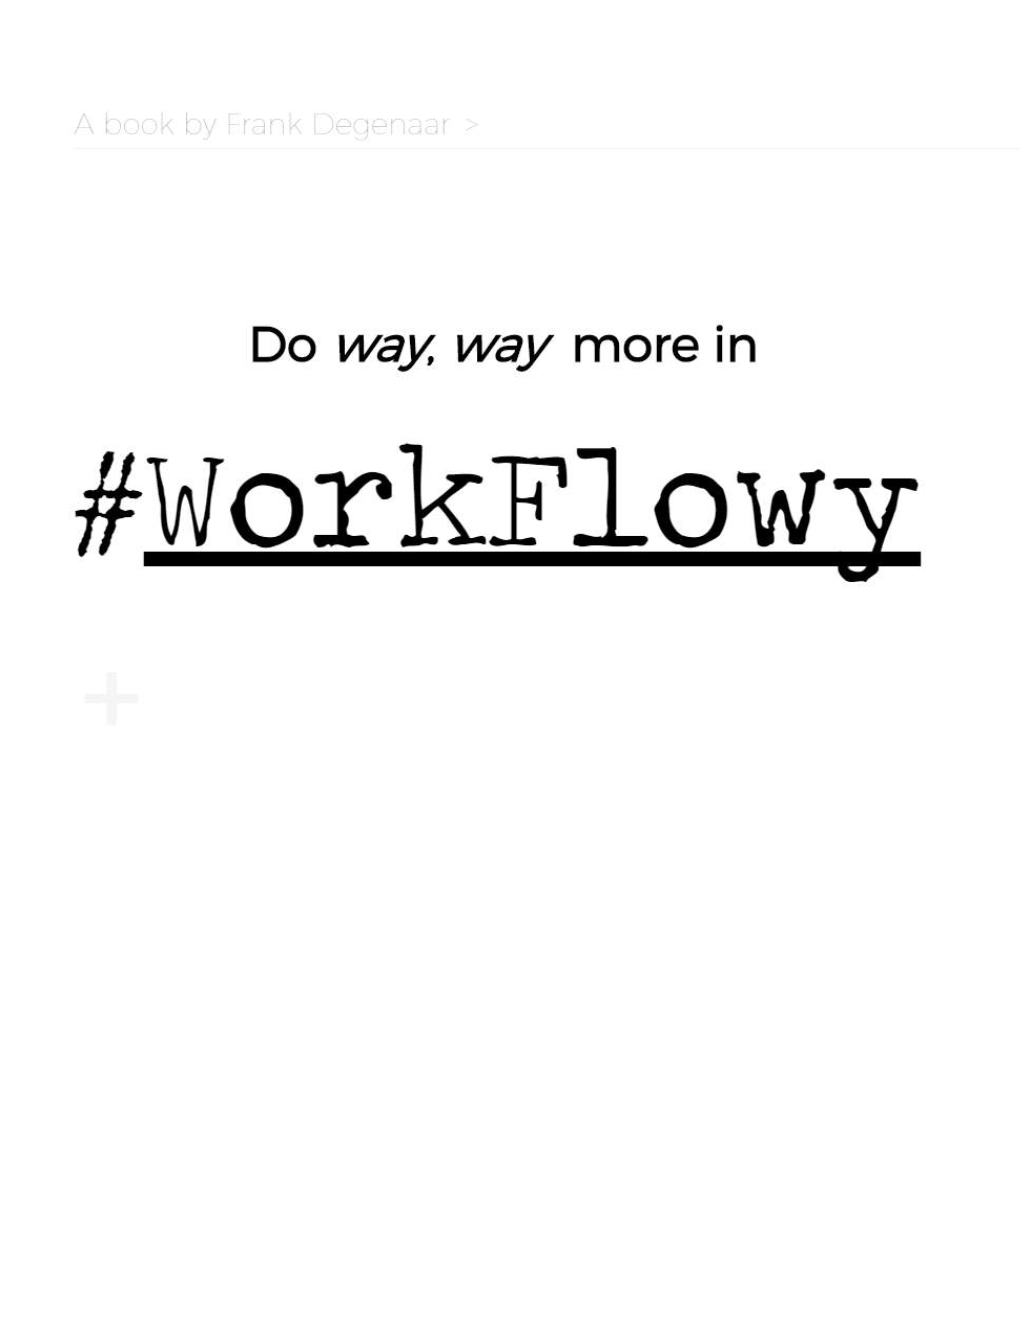 Online Workflowy Browser